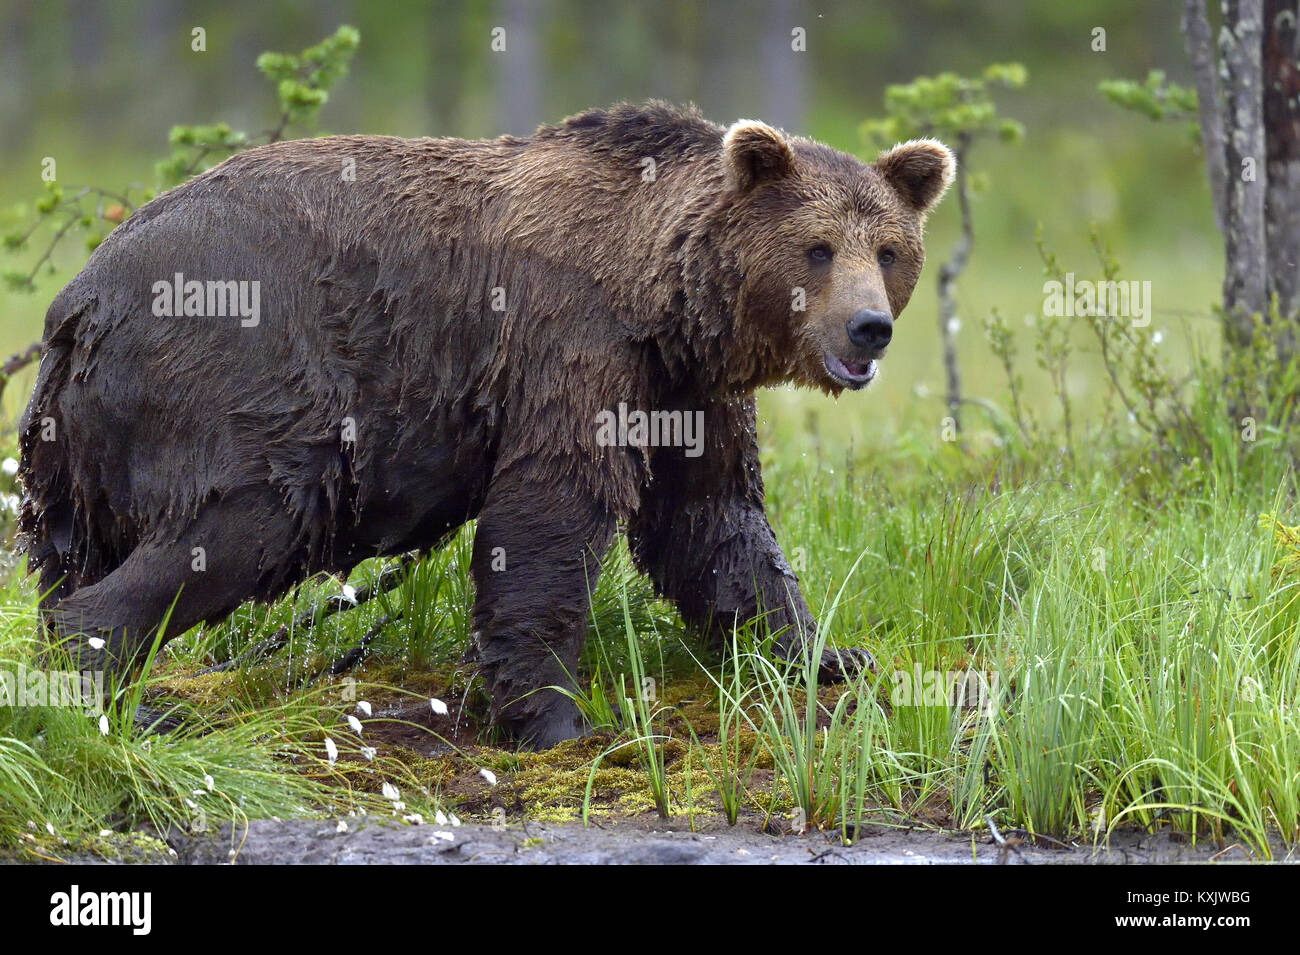 Wild Brown bear (ursus Arctos) in the summer forest Stock Photo